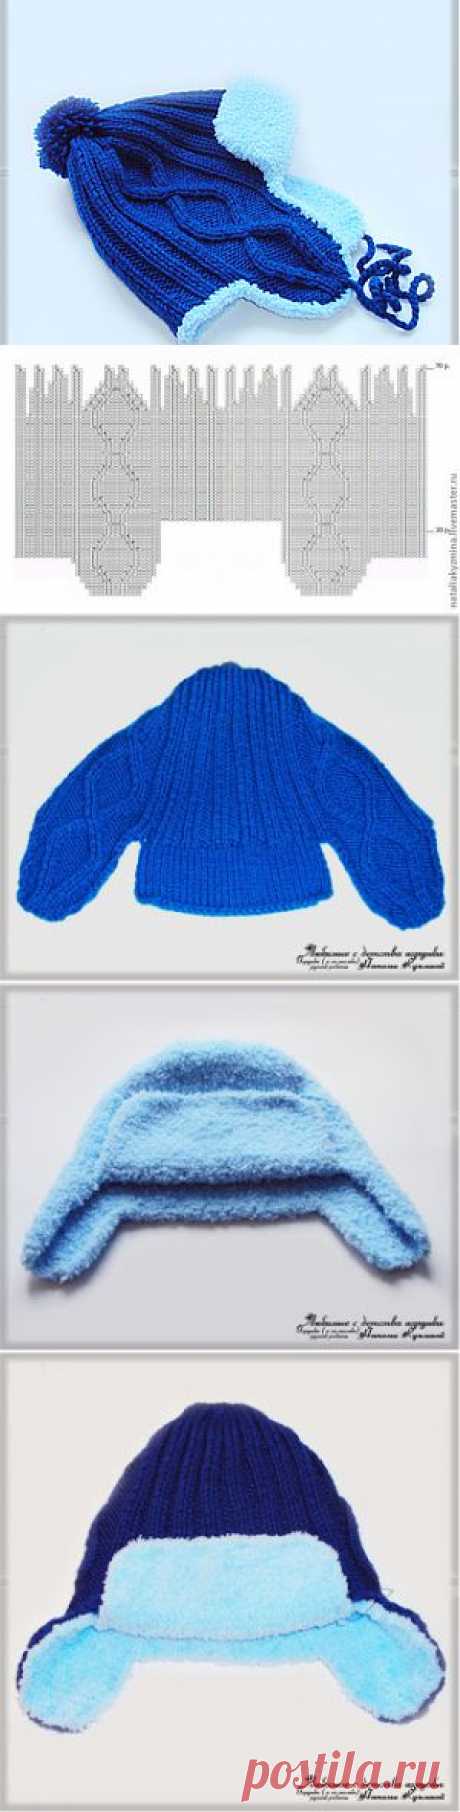 Зимняя вязаная шапочка на ребенка 1,5 - 2-х лет - Ярмарка Мастеров - ручная работа, handmade